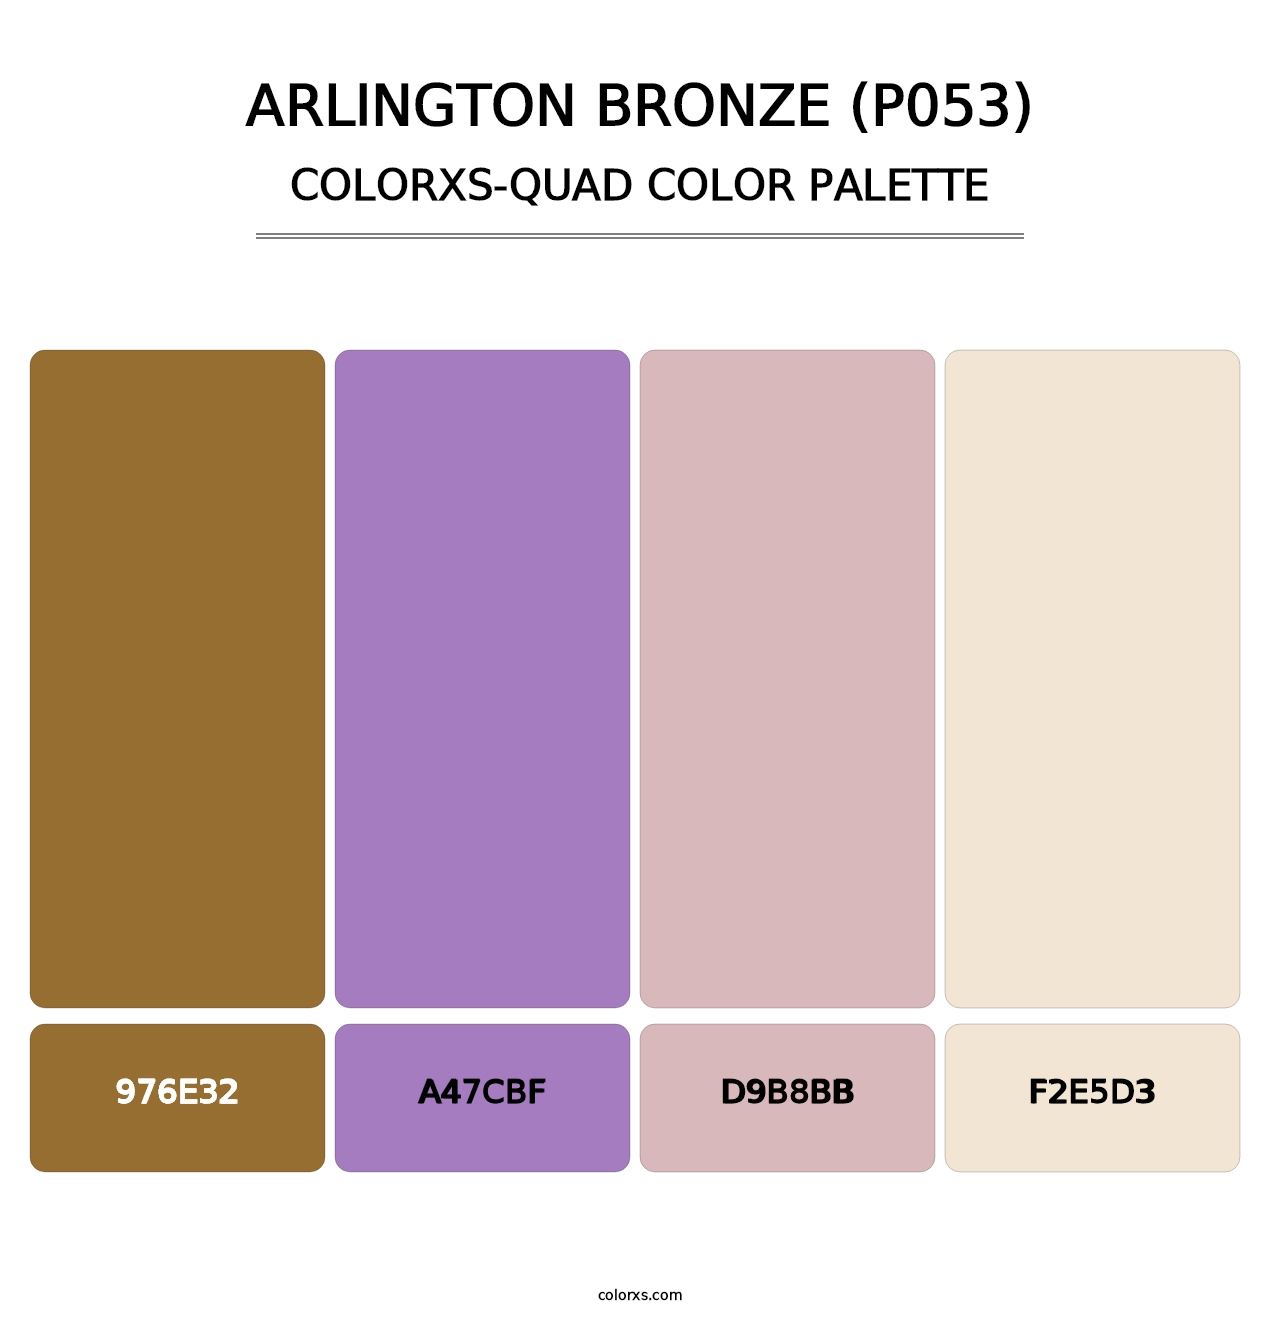 Arlington Bronze (P053) - Colorxs Quad Palette